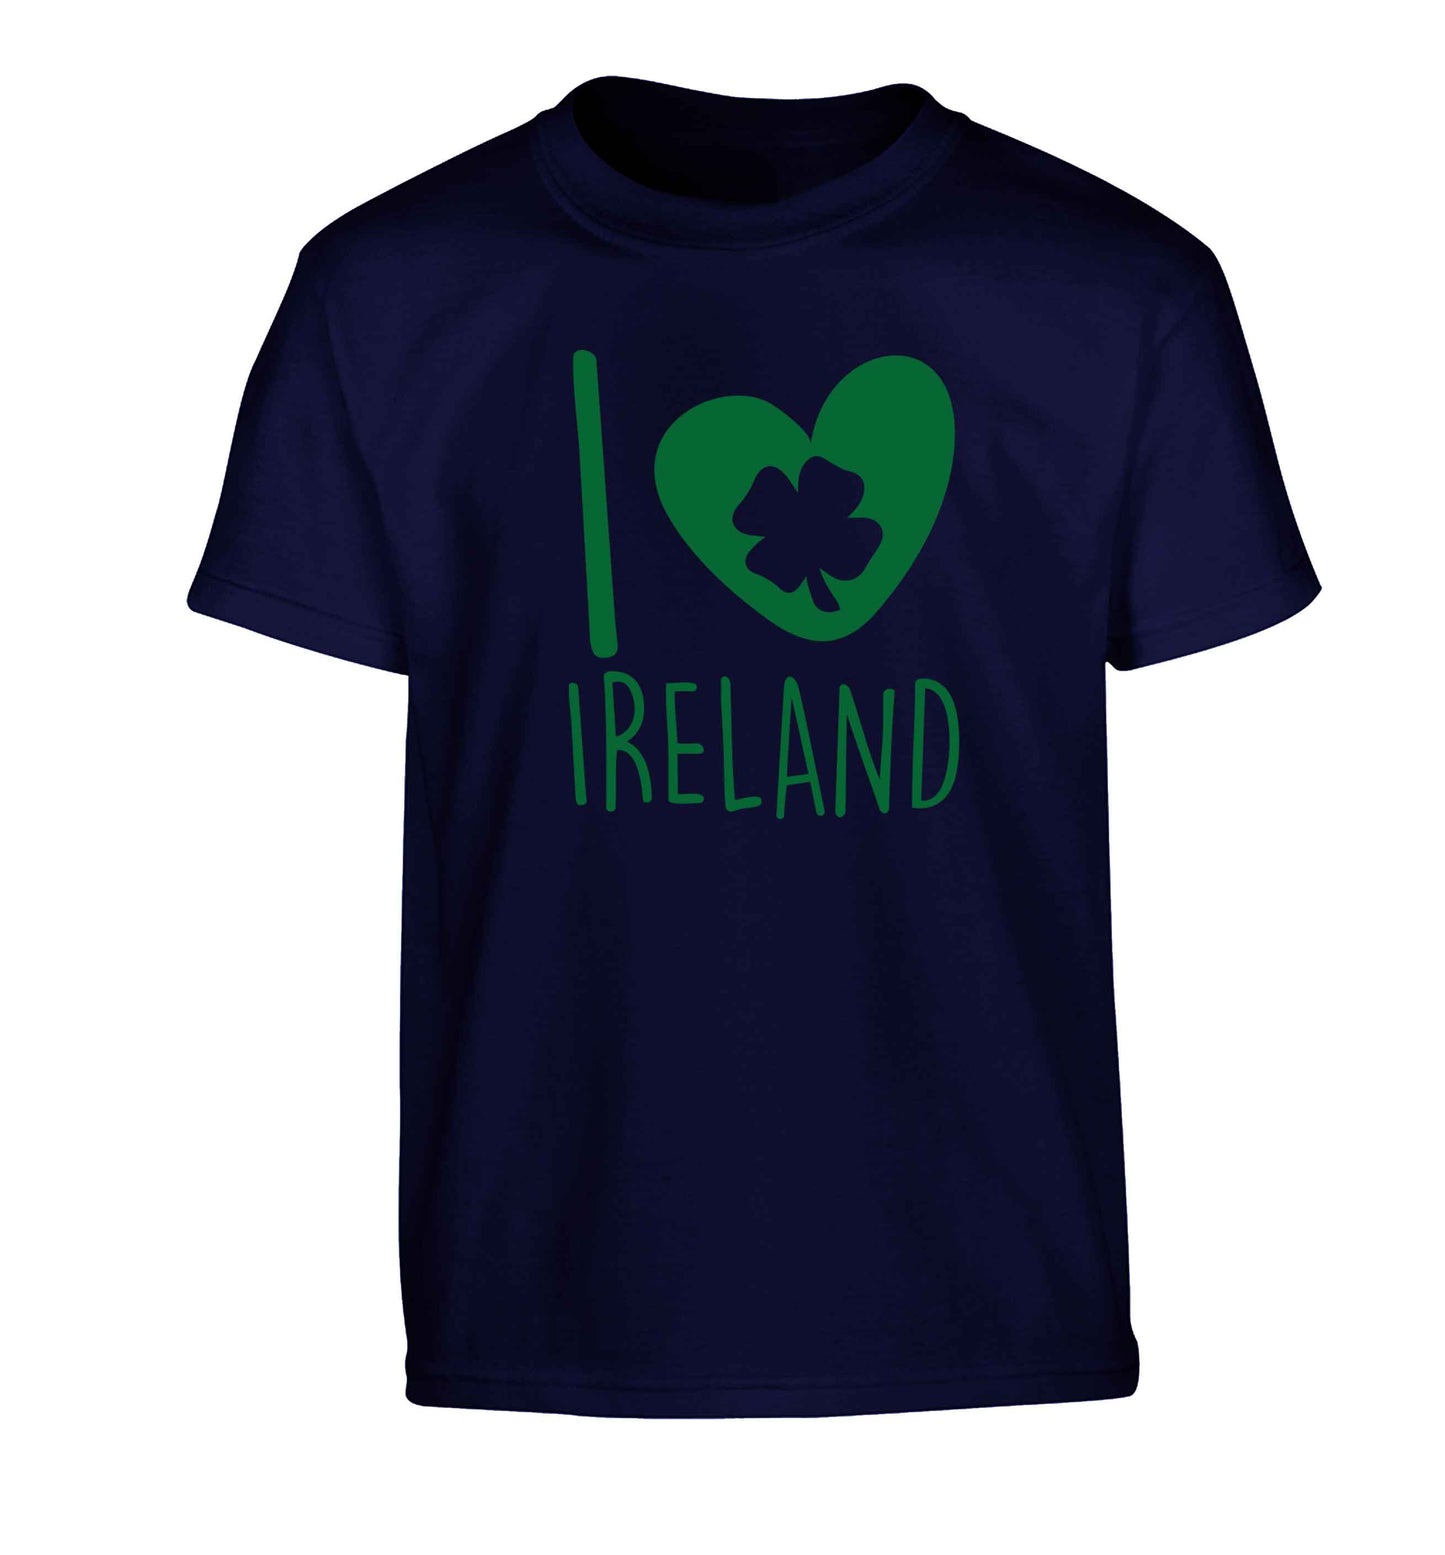 I love Ireland Children's navy Tshirt 12-13 Years